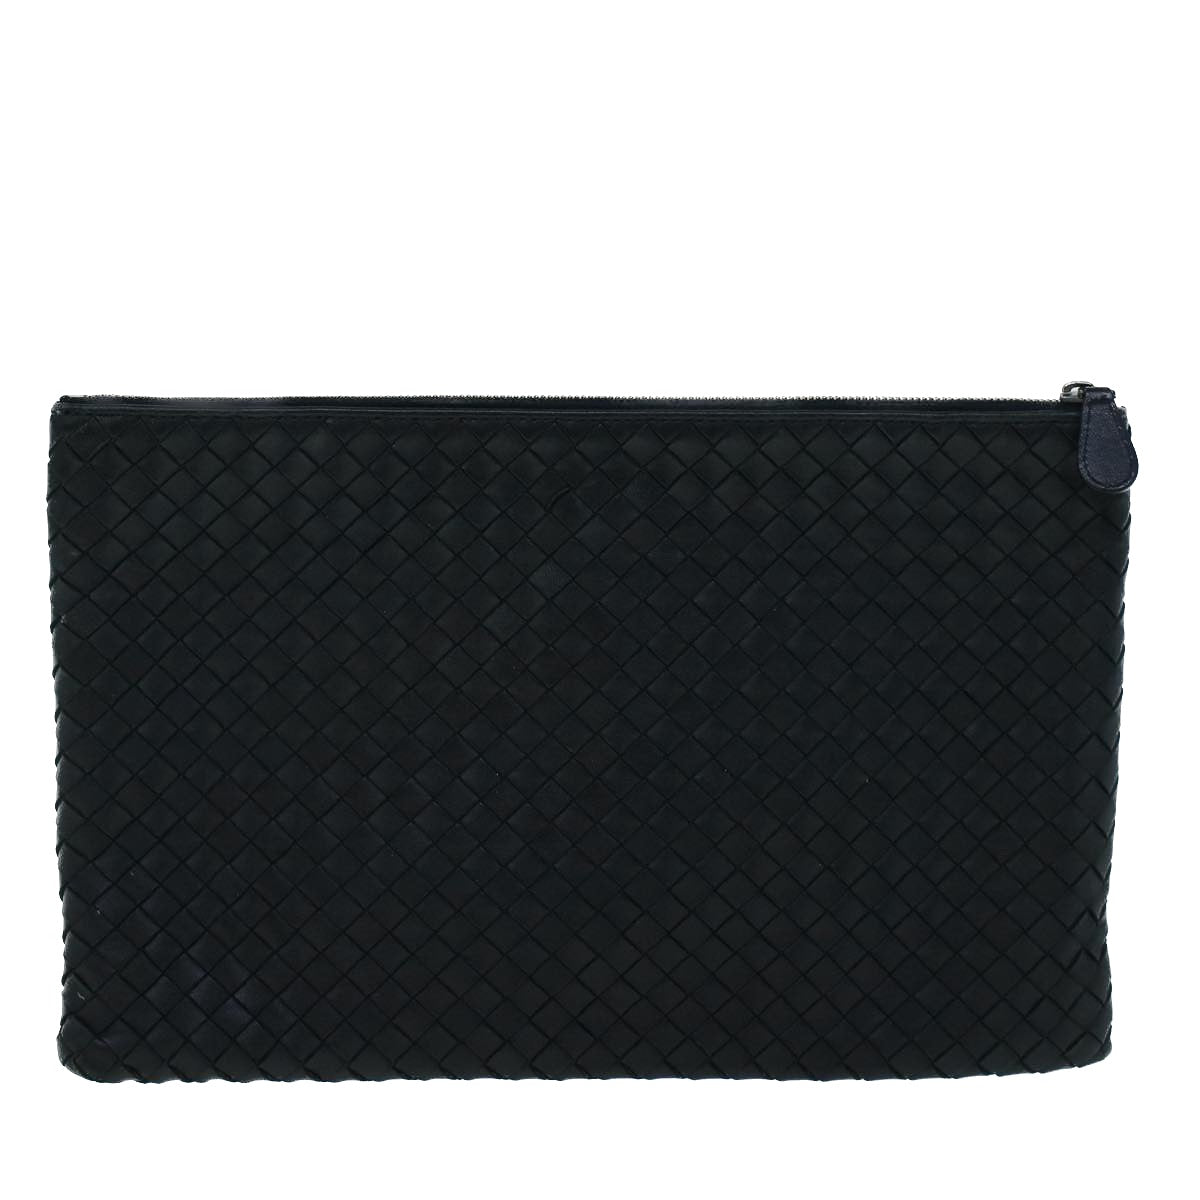 BOTTEGA VENETA INTRECCIATO Clutch Bag Leather Black Auth 57184 - 0